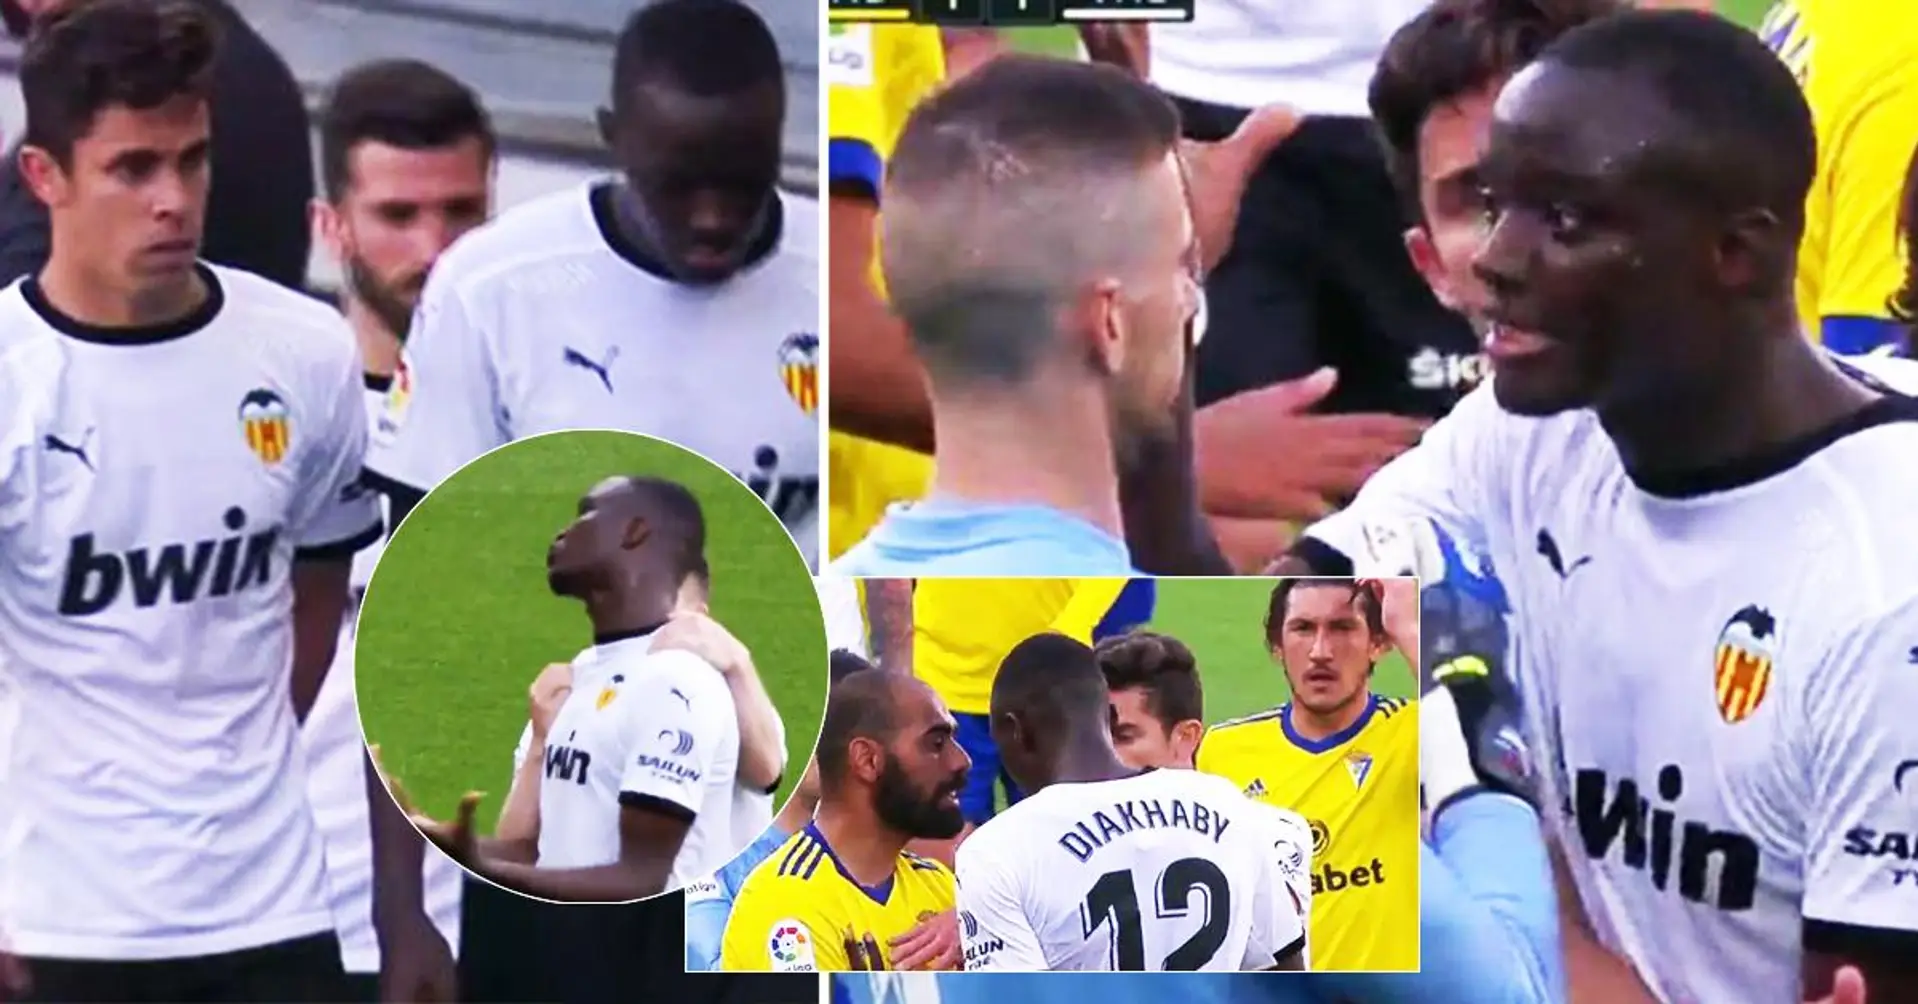 "Non puoi dire questo": l'intera squadra del Valencia esce dal campo durante la partita dopo gli abusi razziali